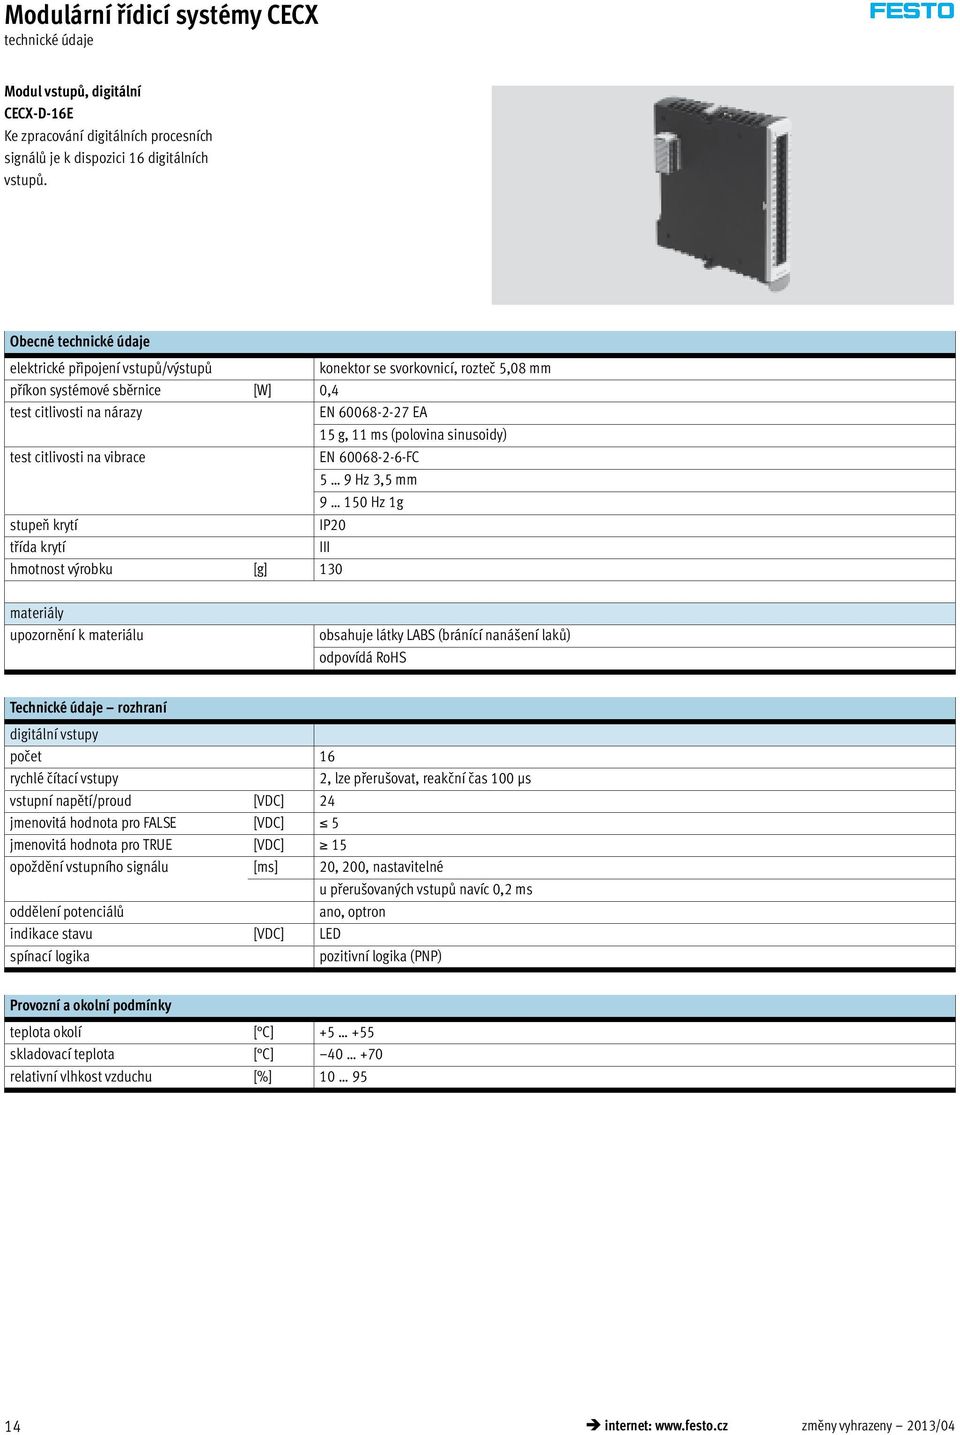 citlivosti na vibrace EN 60068-2-6-FC 5 9 Hz 3,5 mm 9 150 Hz 1g stupeň krytí IP20 třída krytí III hmotnost výrobku [g] 130 materiály upozornění k materiálu obsahuje látky LABS (bránící nanášení laků)